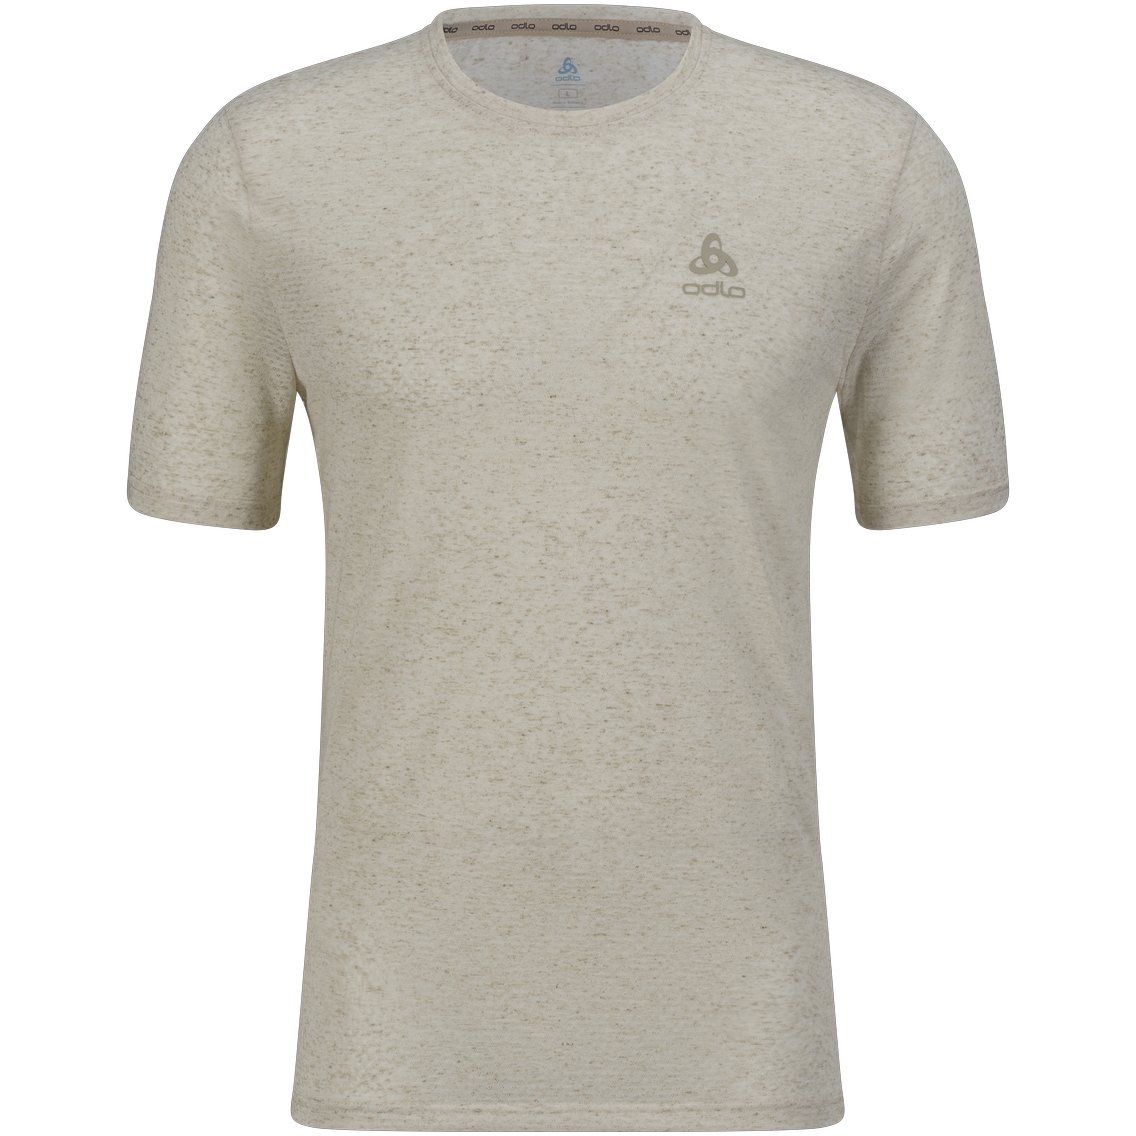 Picture of Odlo Active 365 Linencool T-Shirt Men - zero dye melange